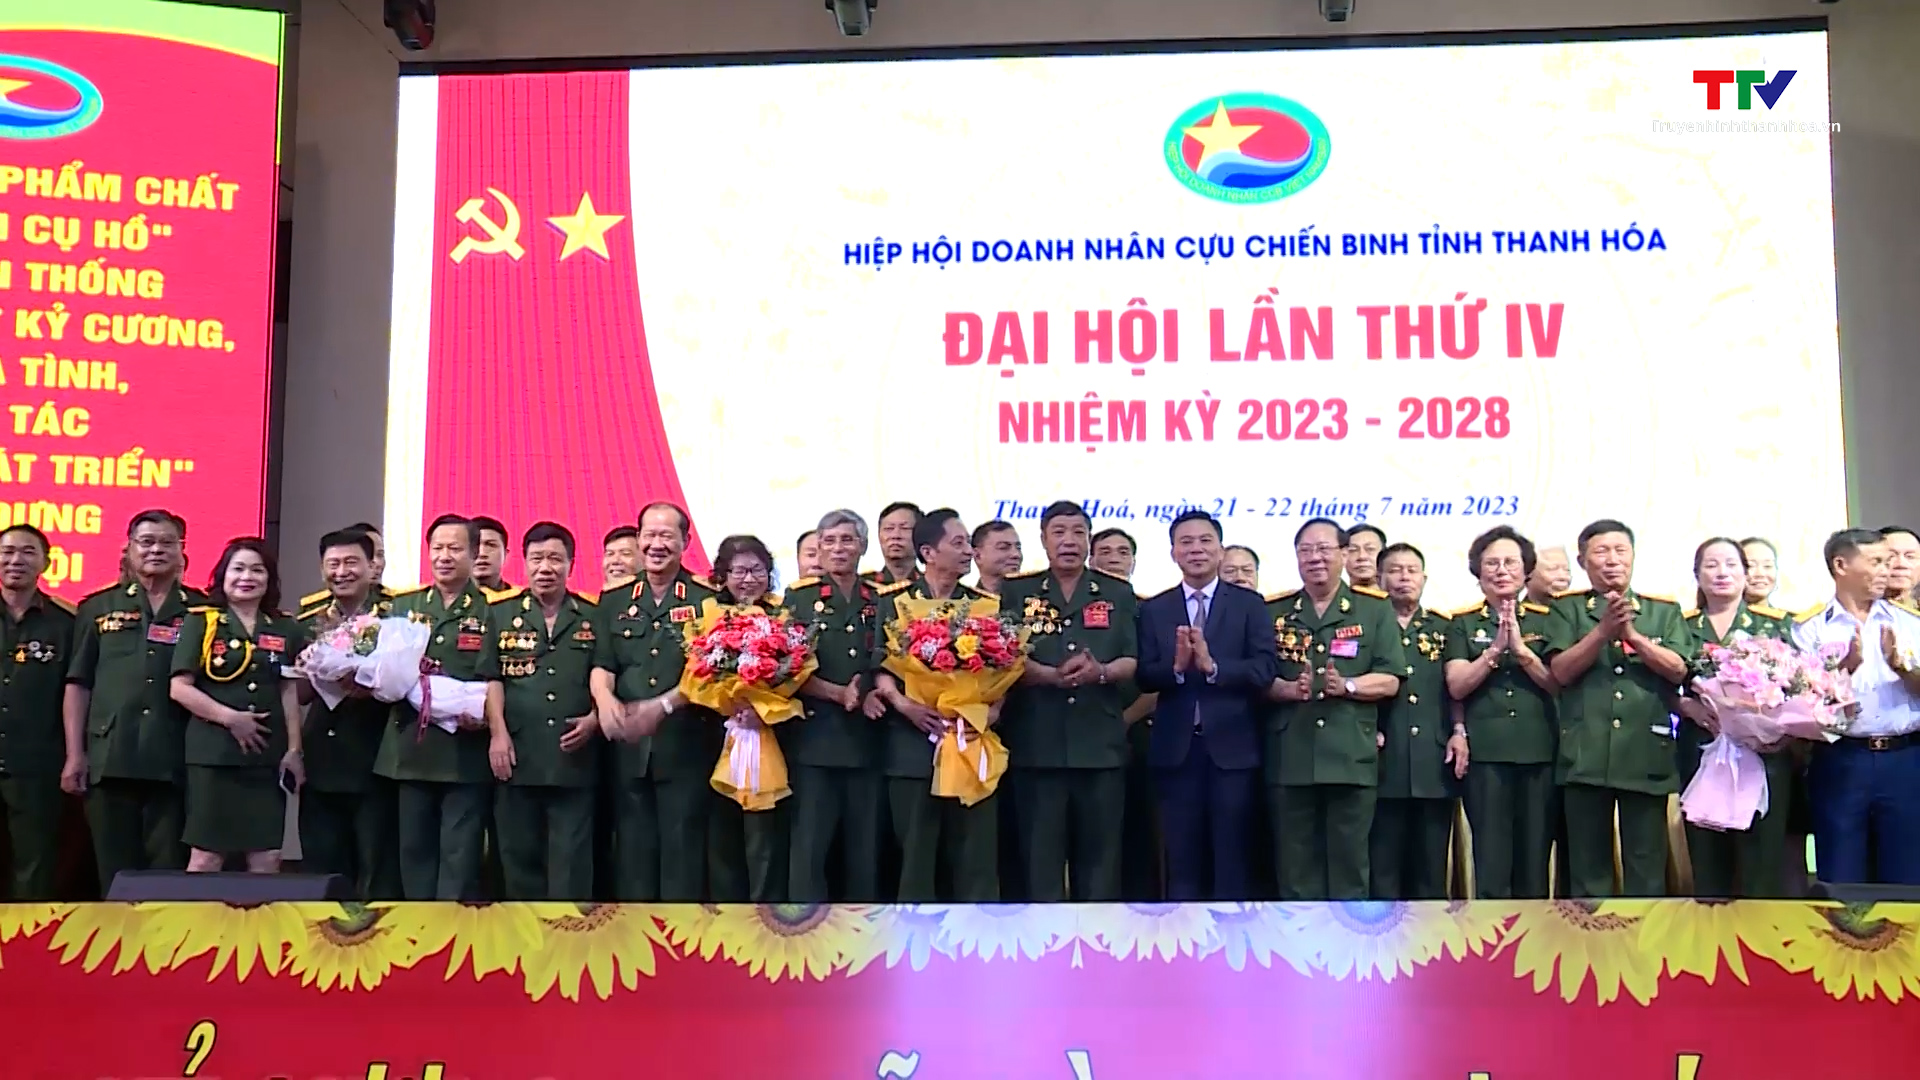 Đại hội lần thứ IV Hiệp hội doanh nhân Cựu chiến binh tỉnh Thanh Hóa - Ảnh 7.